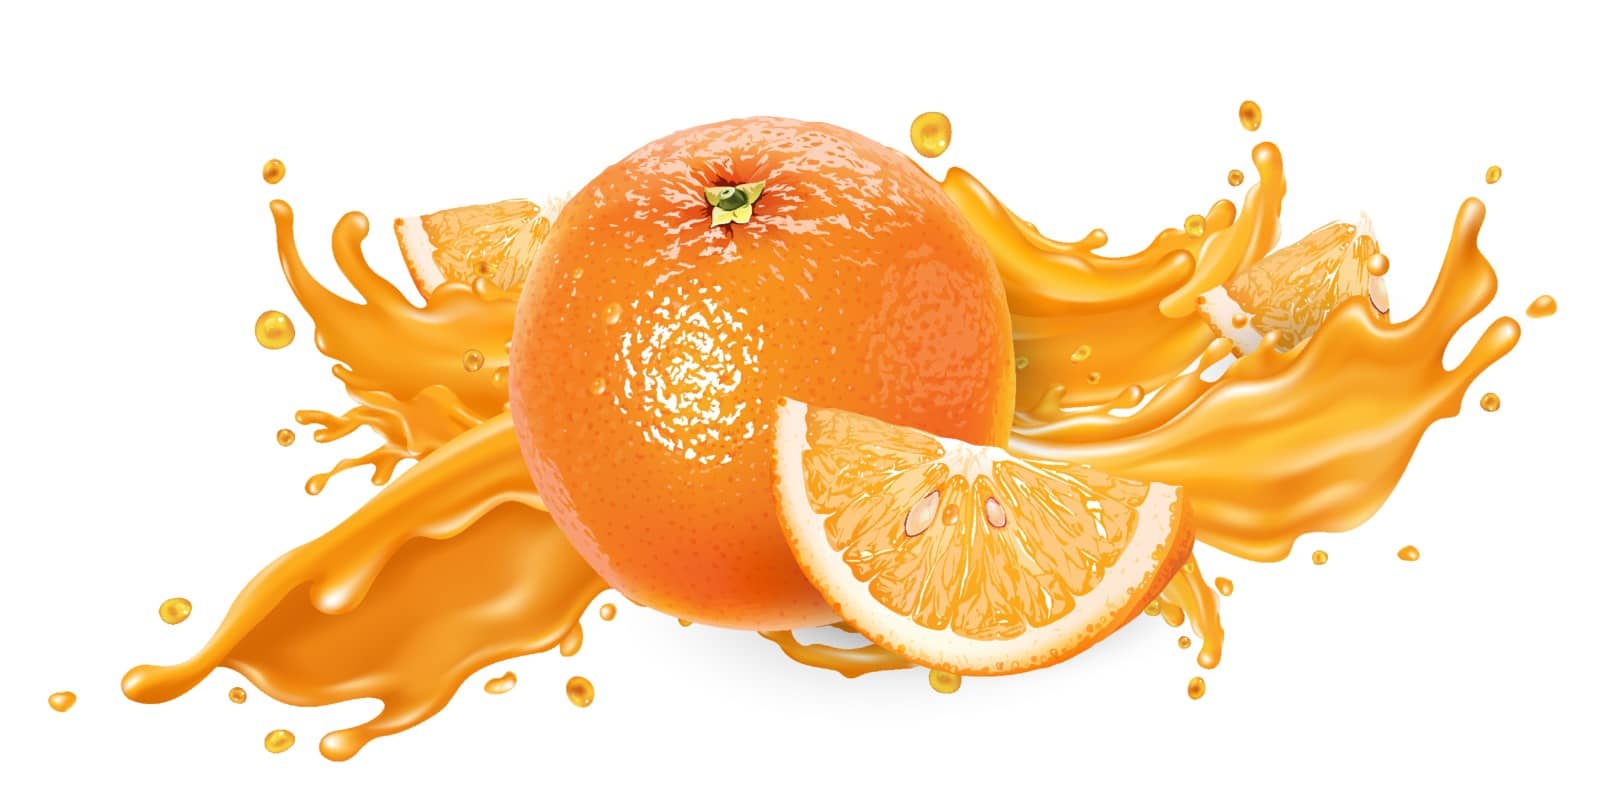 Splash of fruit juice and fresh orange. by ConceptCafe